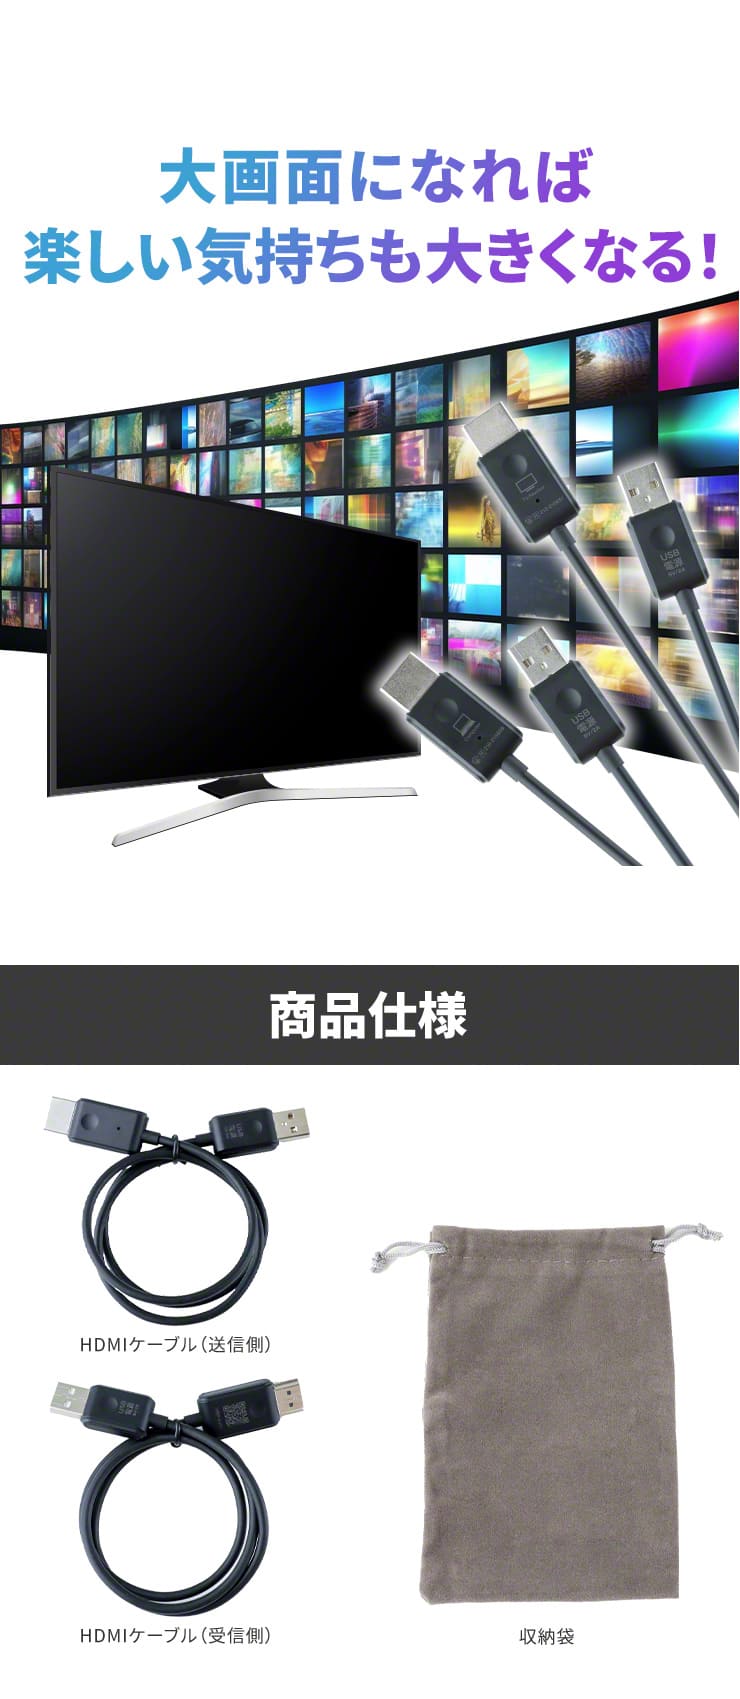 HDMI Wi-Fi 無線 スマートテレビ ミラリン コンパクト 大画面